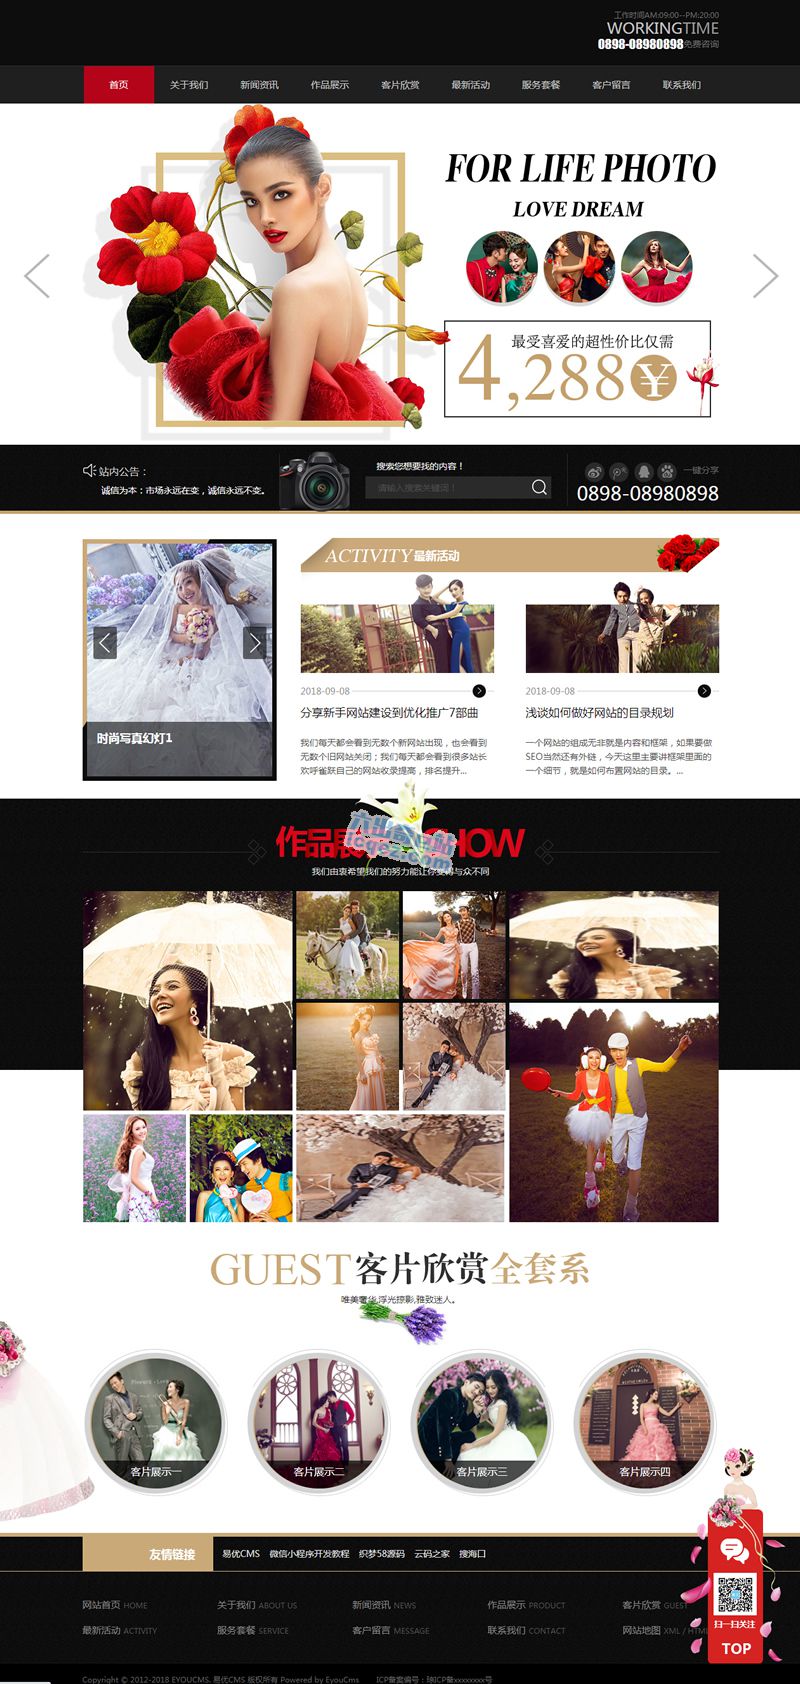     响应式时尚婚纱写真设计工作室网站源码 易优CMS 模板
